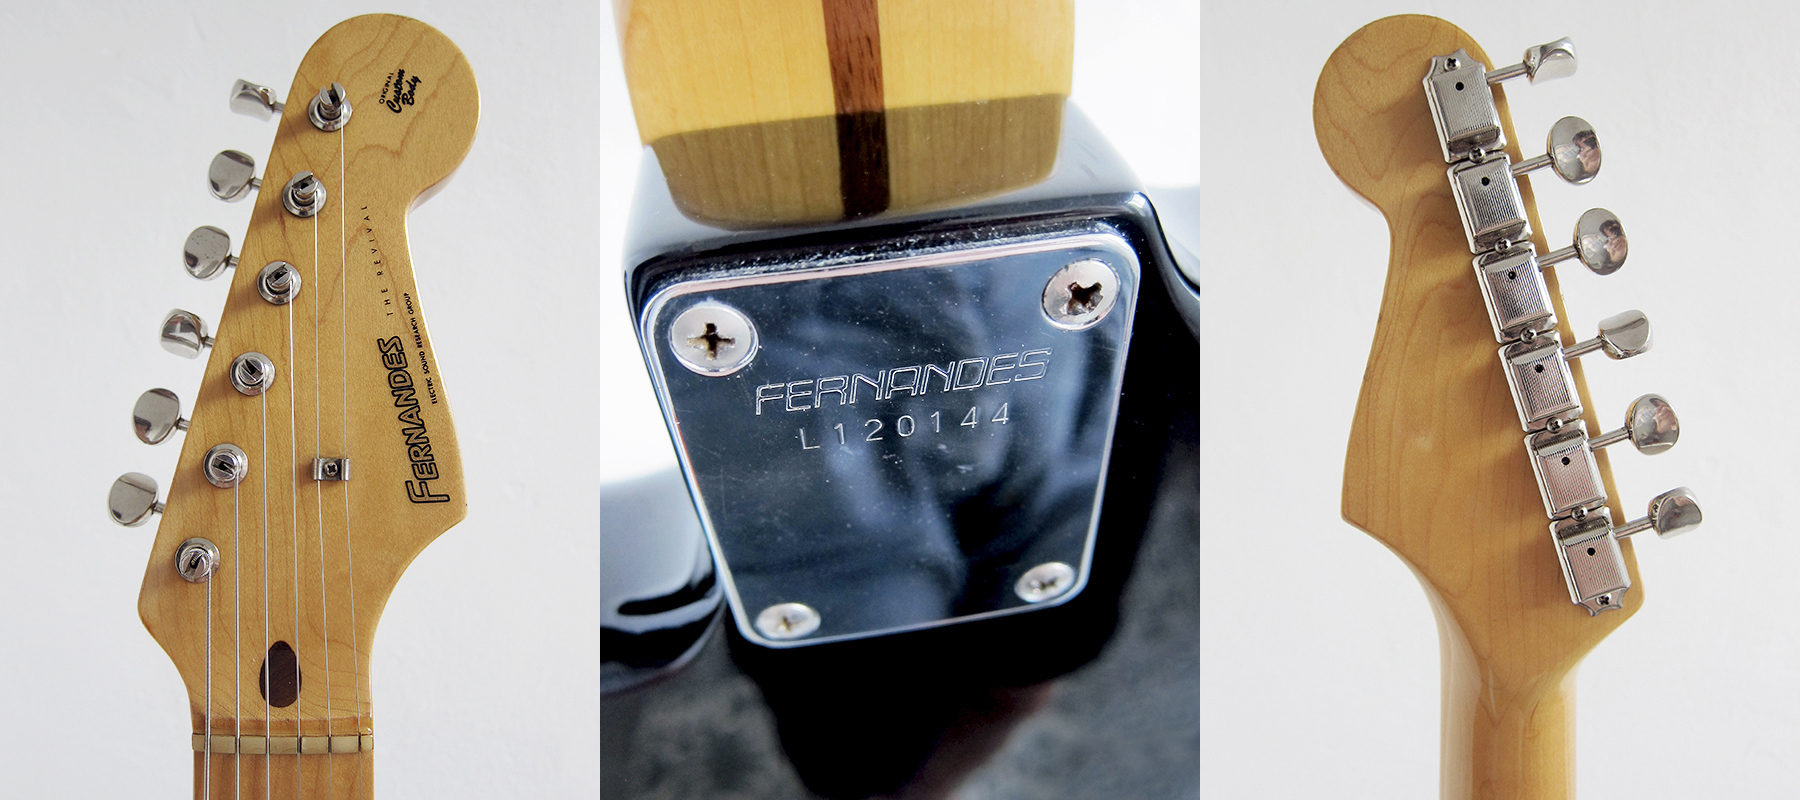 fernandes guitar serial number lookup